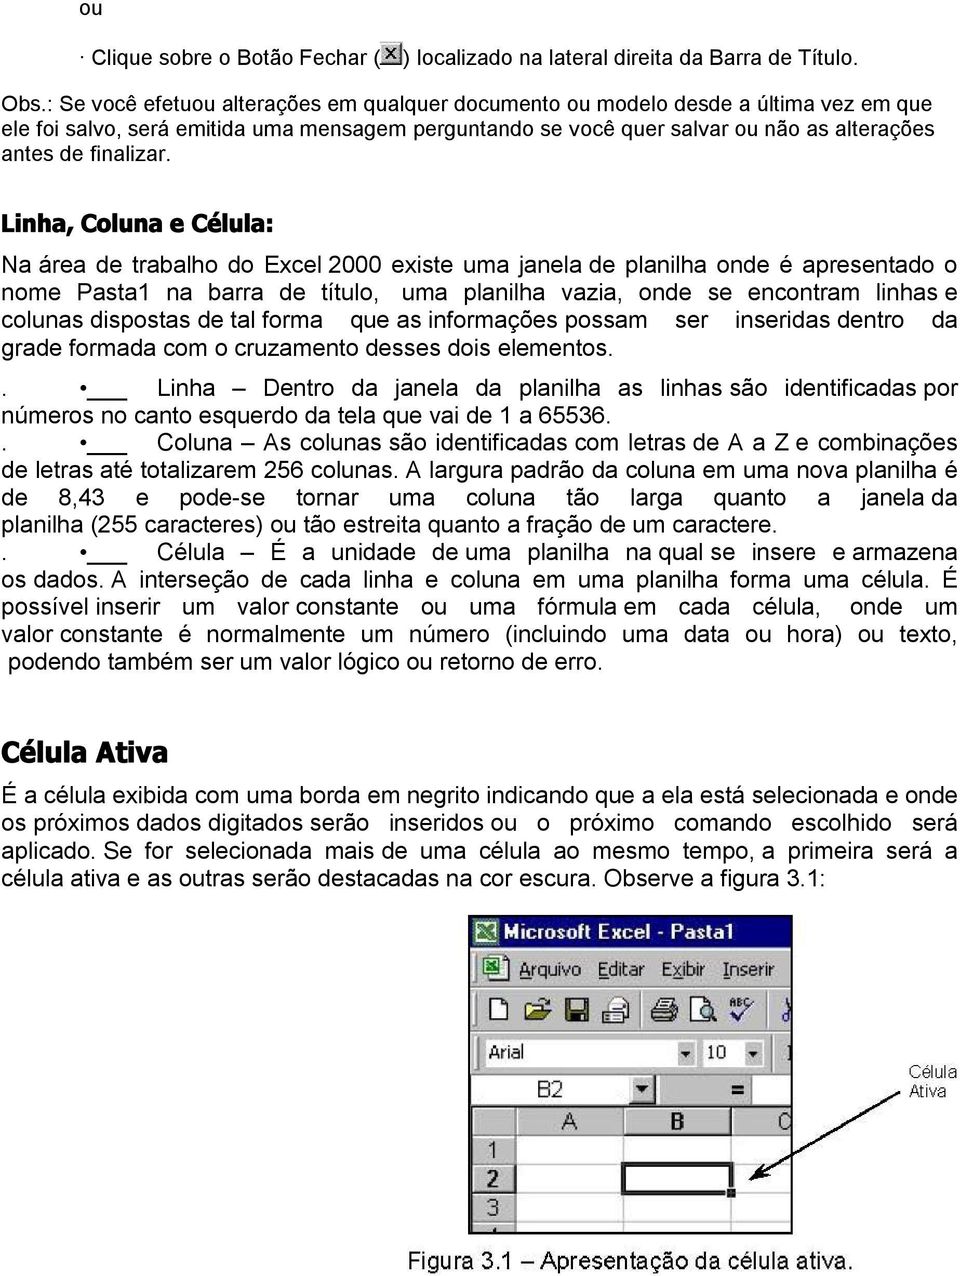 Linha, Coluna e Célula: Na área de trabalho do Excel 2000 existe uma janela de planilha onde é apresentado o nome Pasta1 na barra de título, uma planilha vazia, onde se encontram linhas e colunas